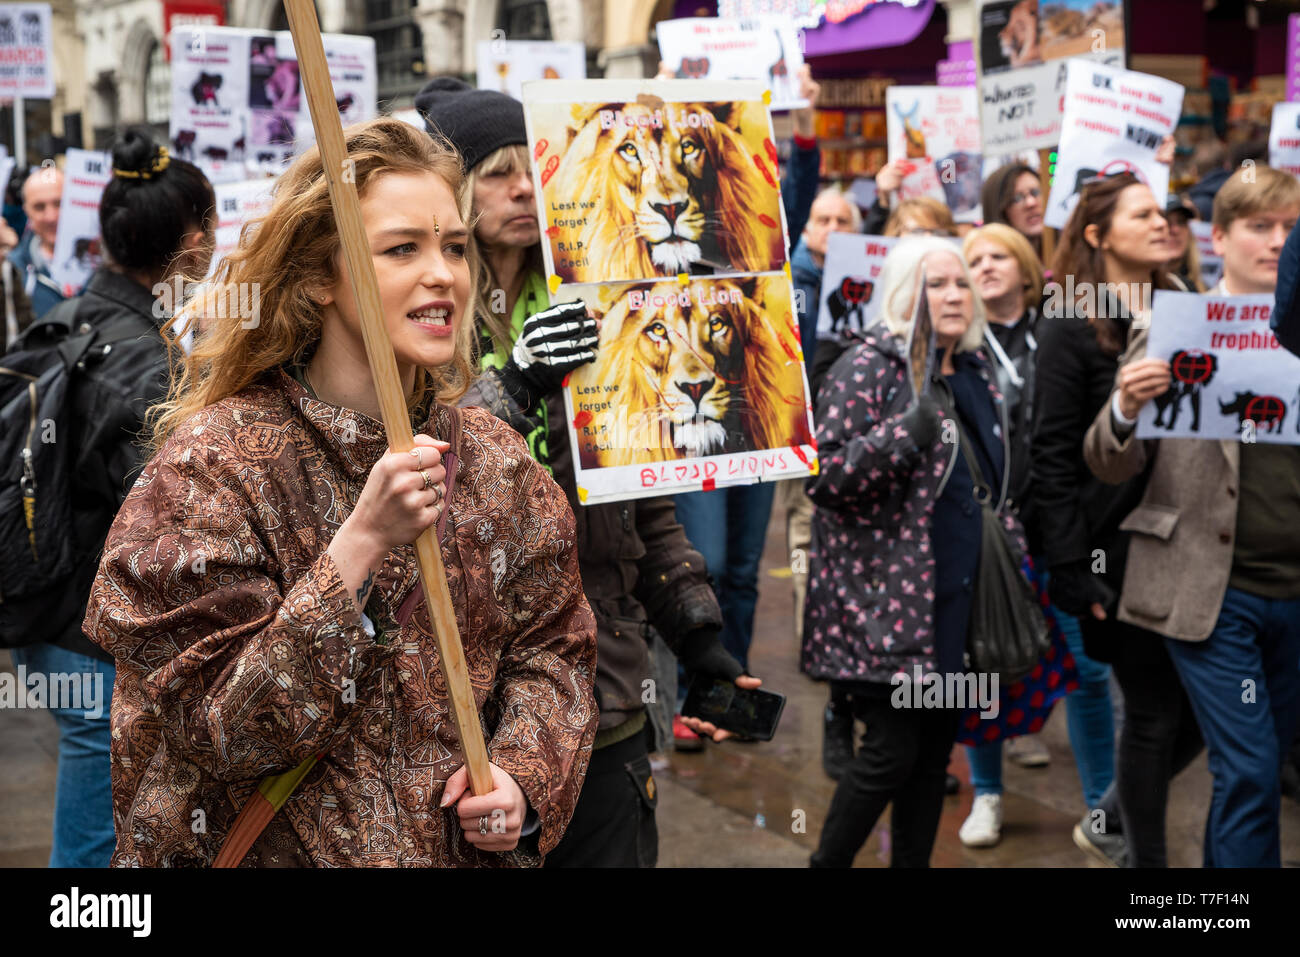 El London marcha en contra de la caza de trofeos y la extinción se reunieron en Cavendish Square y marcharon por el centro de Londres a Downing Street. Foto de stock